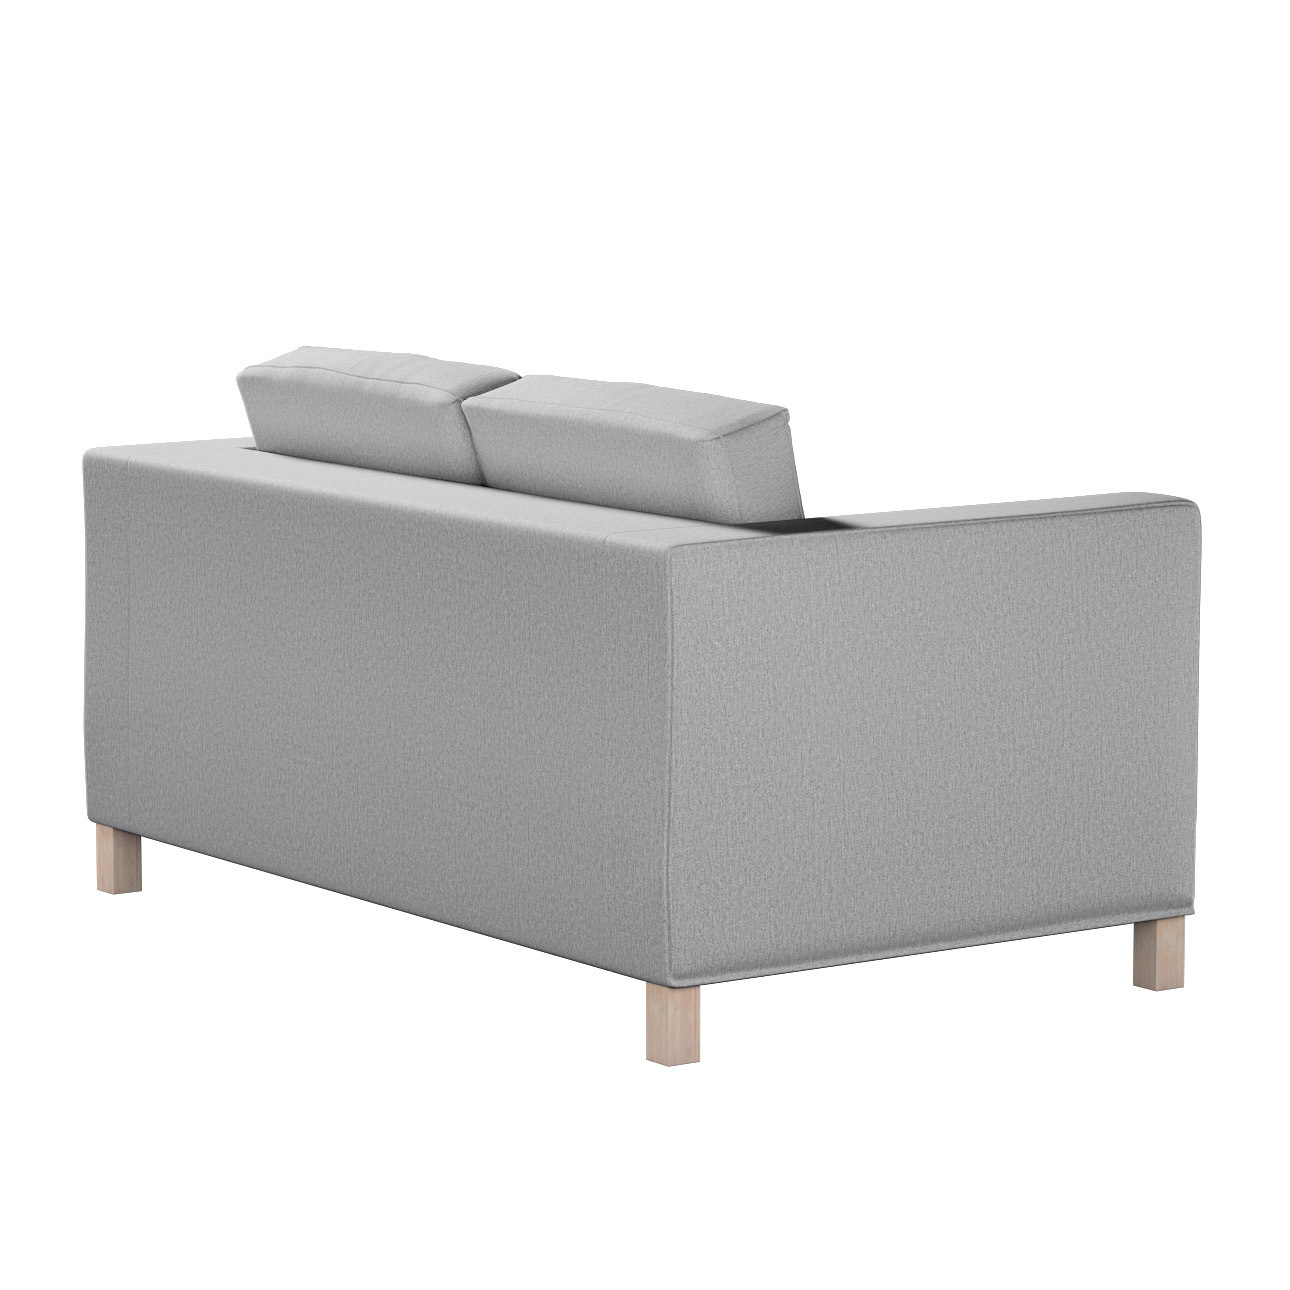 Bezug für Karlanda 2-Sitzer Sofa nicht ausklappbar, kurz, szary, 60cm x 30c günstig online kaufen